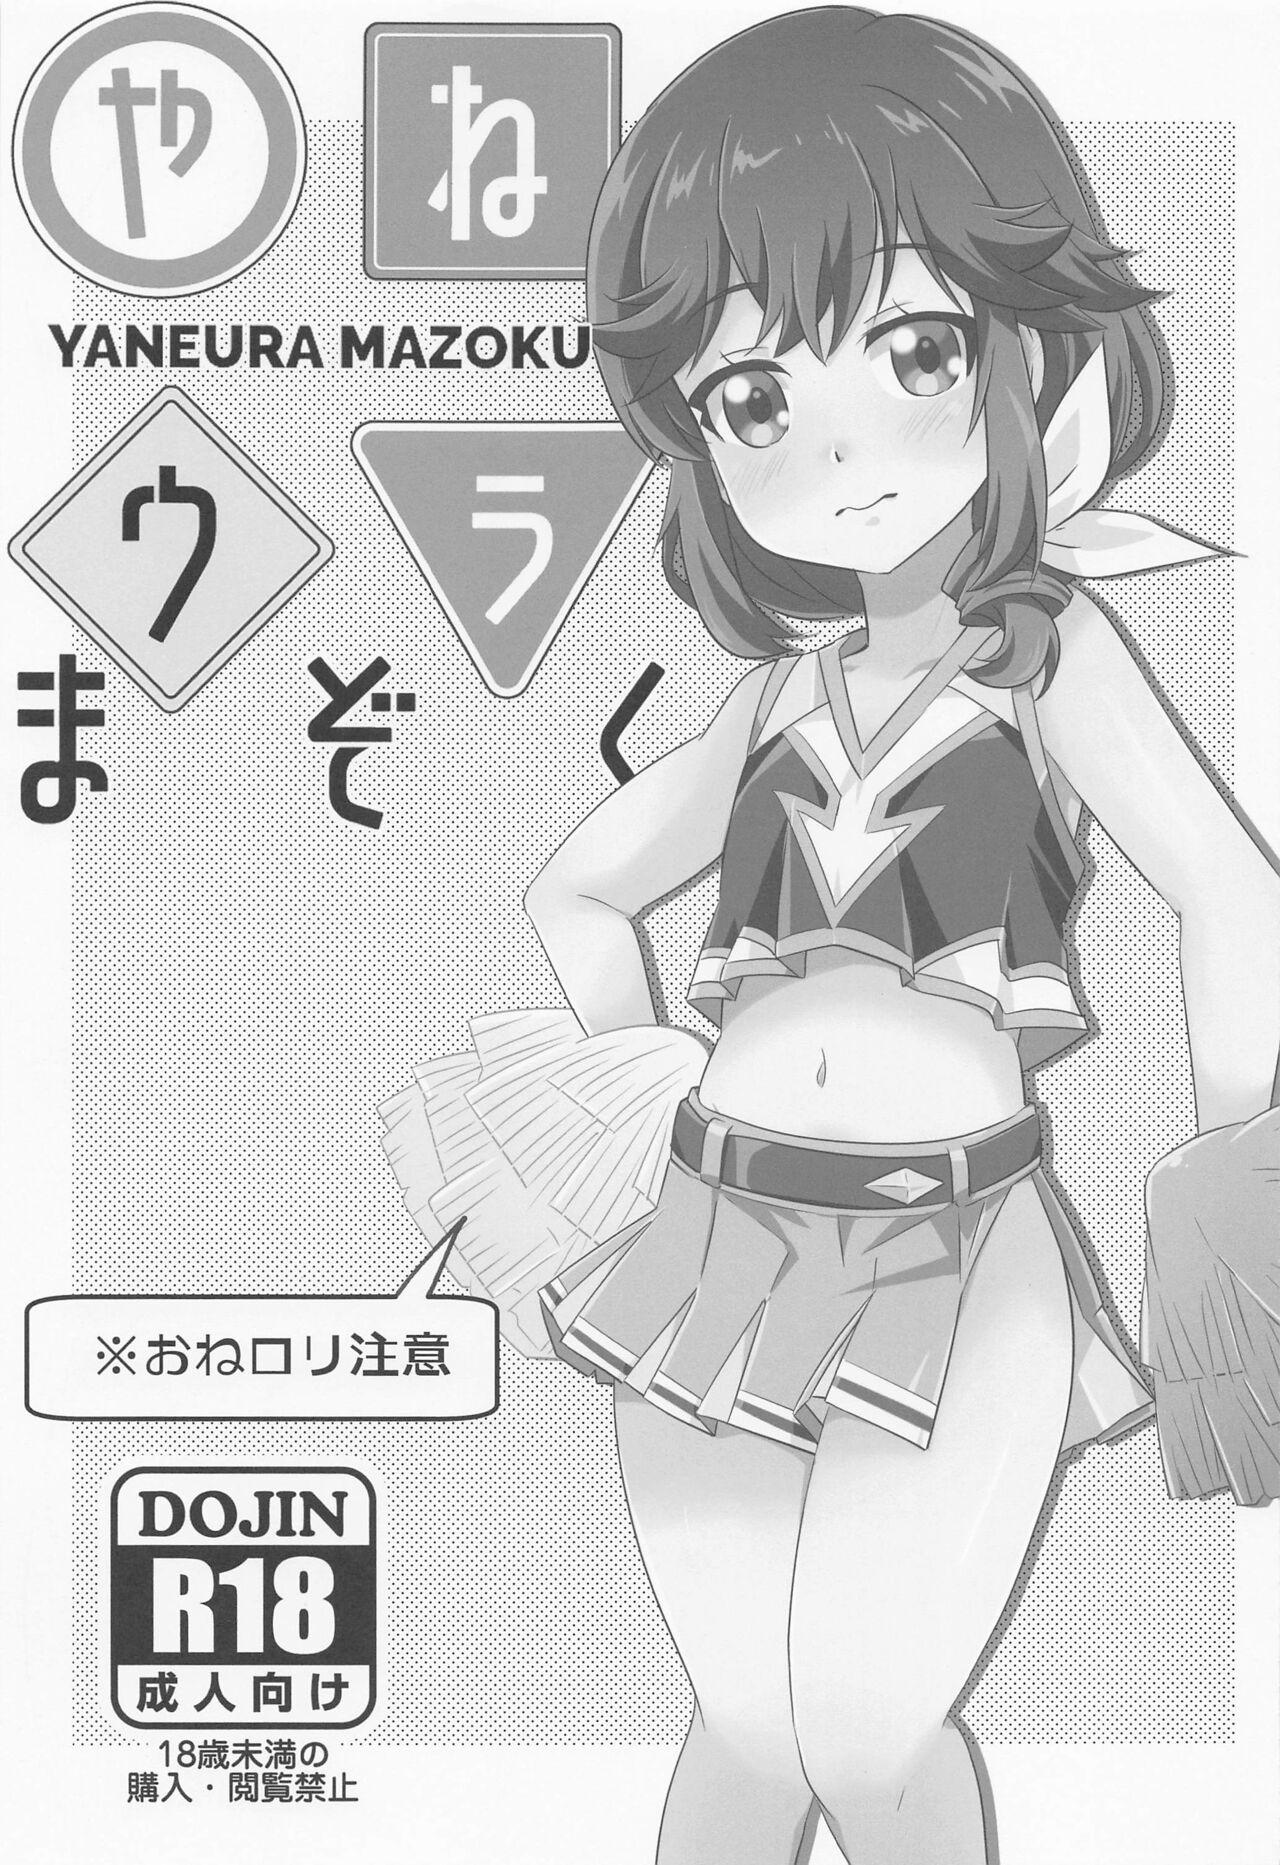 Solo Yaneura Mazoku – Machikado mazoku | the demon girl next door Dotado - Chapter 1